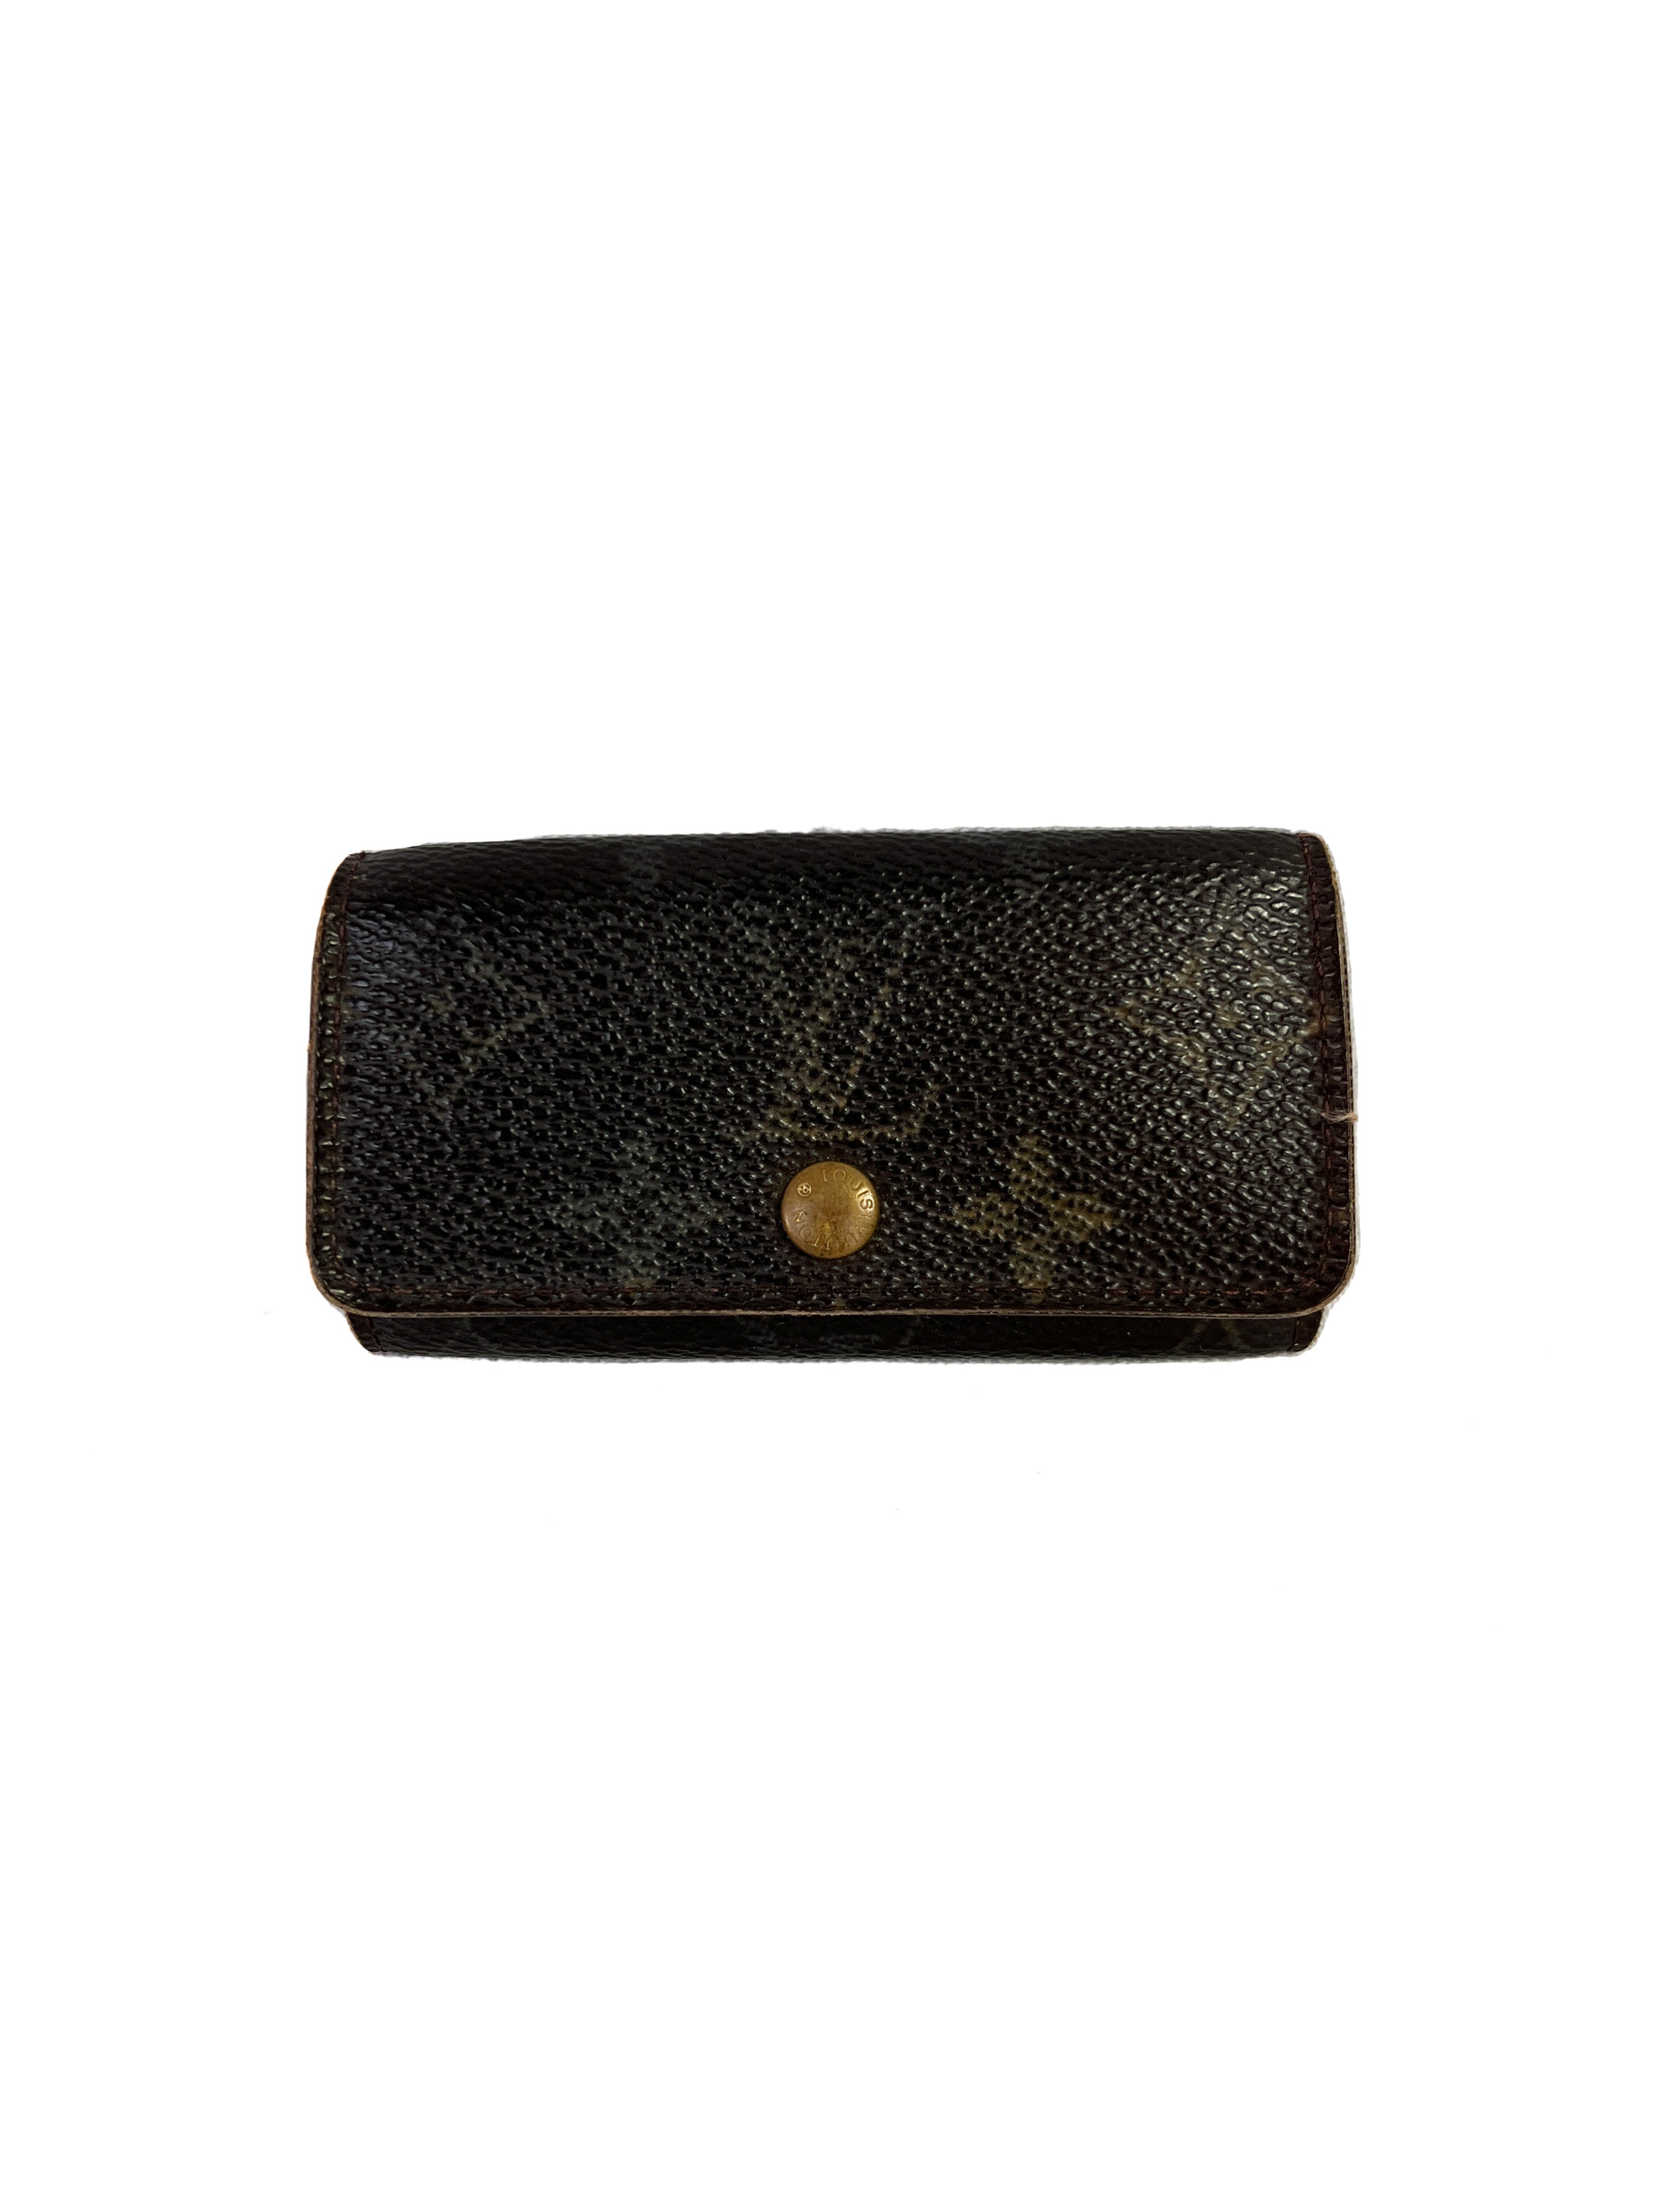 Vintage Louis Vuitton Men's Wallet Malletier A